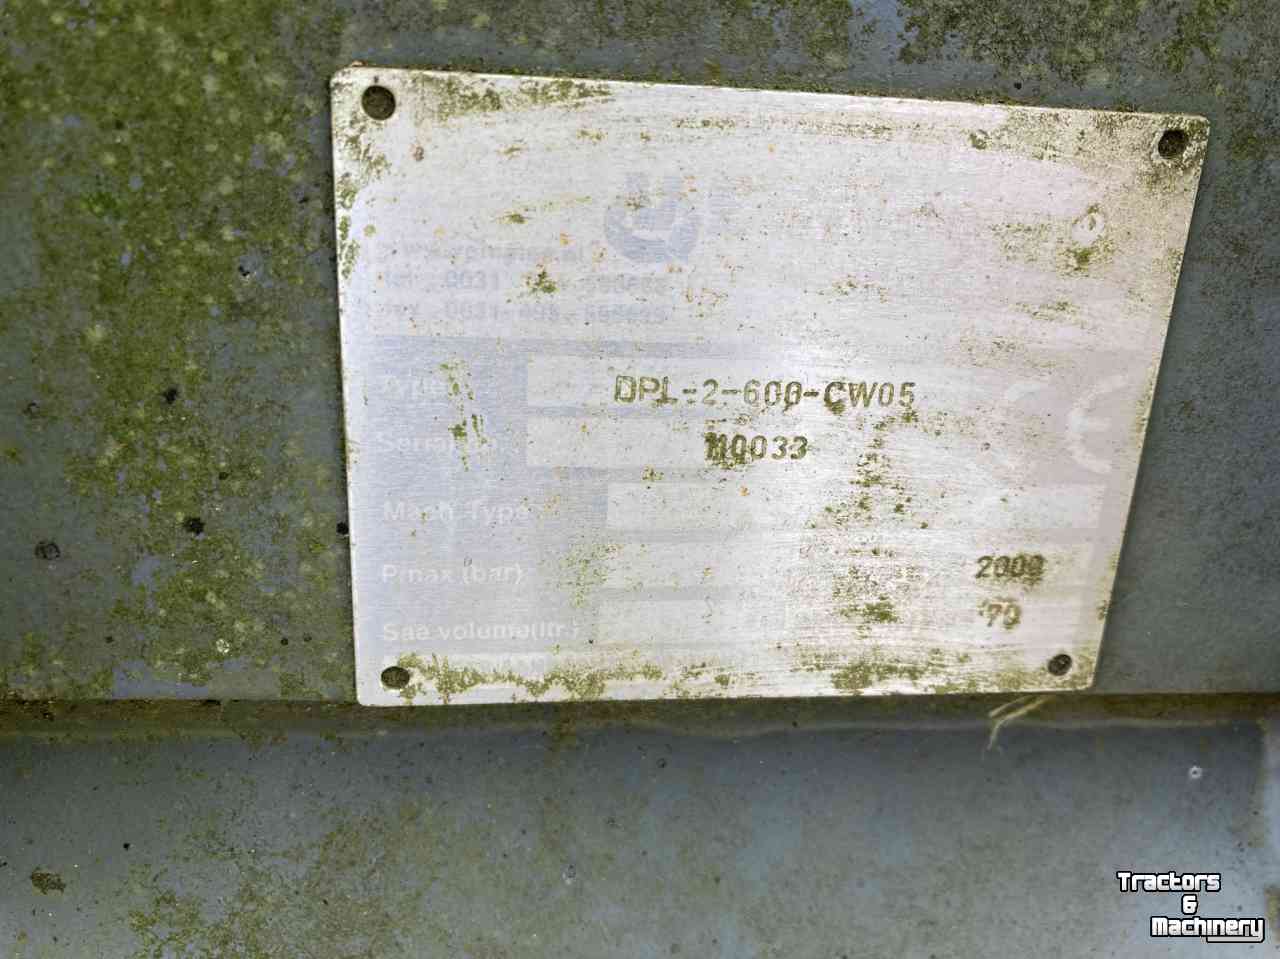 Baggerlöffels  DPL-2-600-CW05  Dieplepelbak